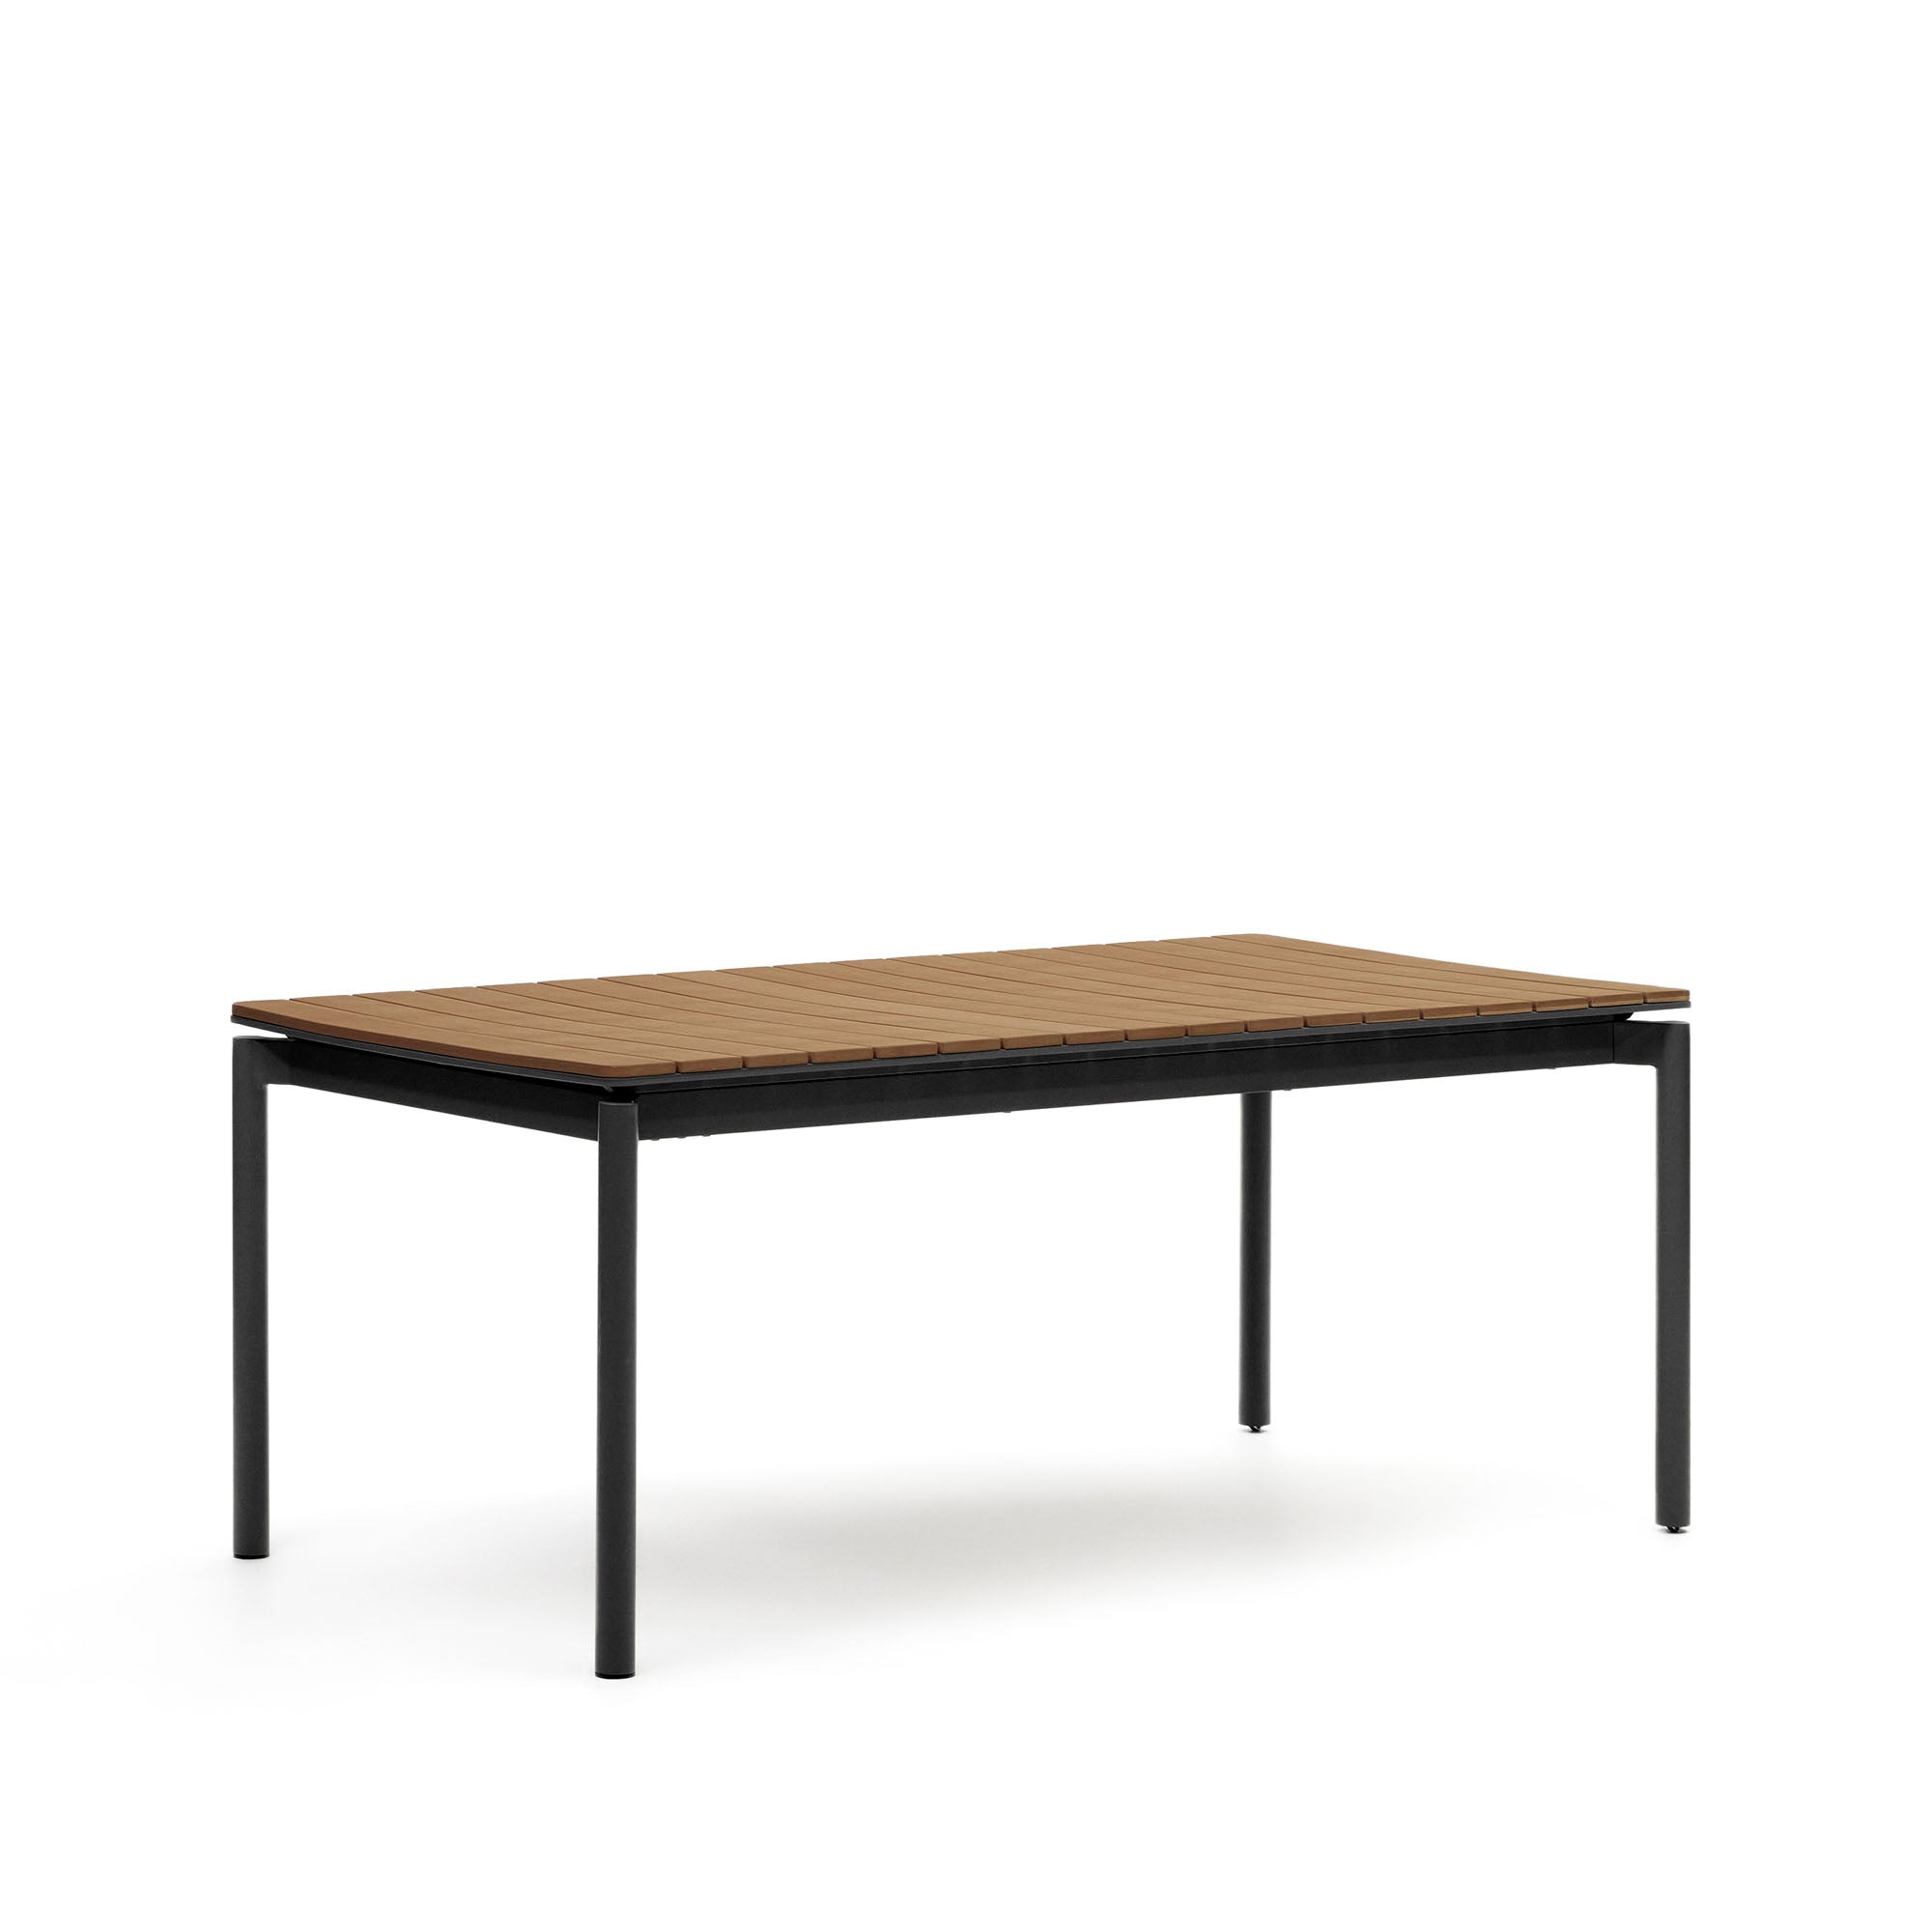 Canyelles kihúzható kültéri asztal, műanyag fűrészáru és matt fekete alumínium, 180(240) x 100 cm